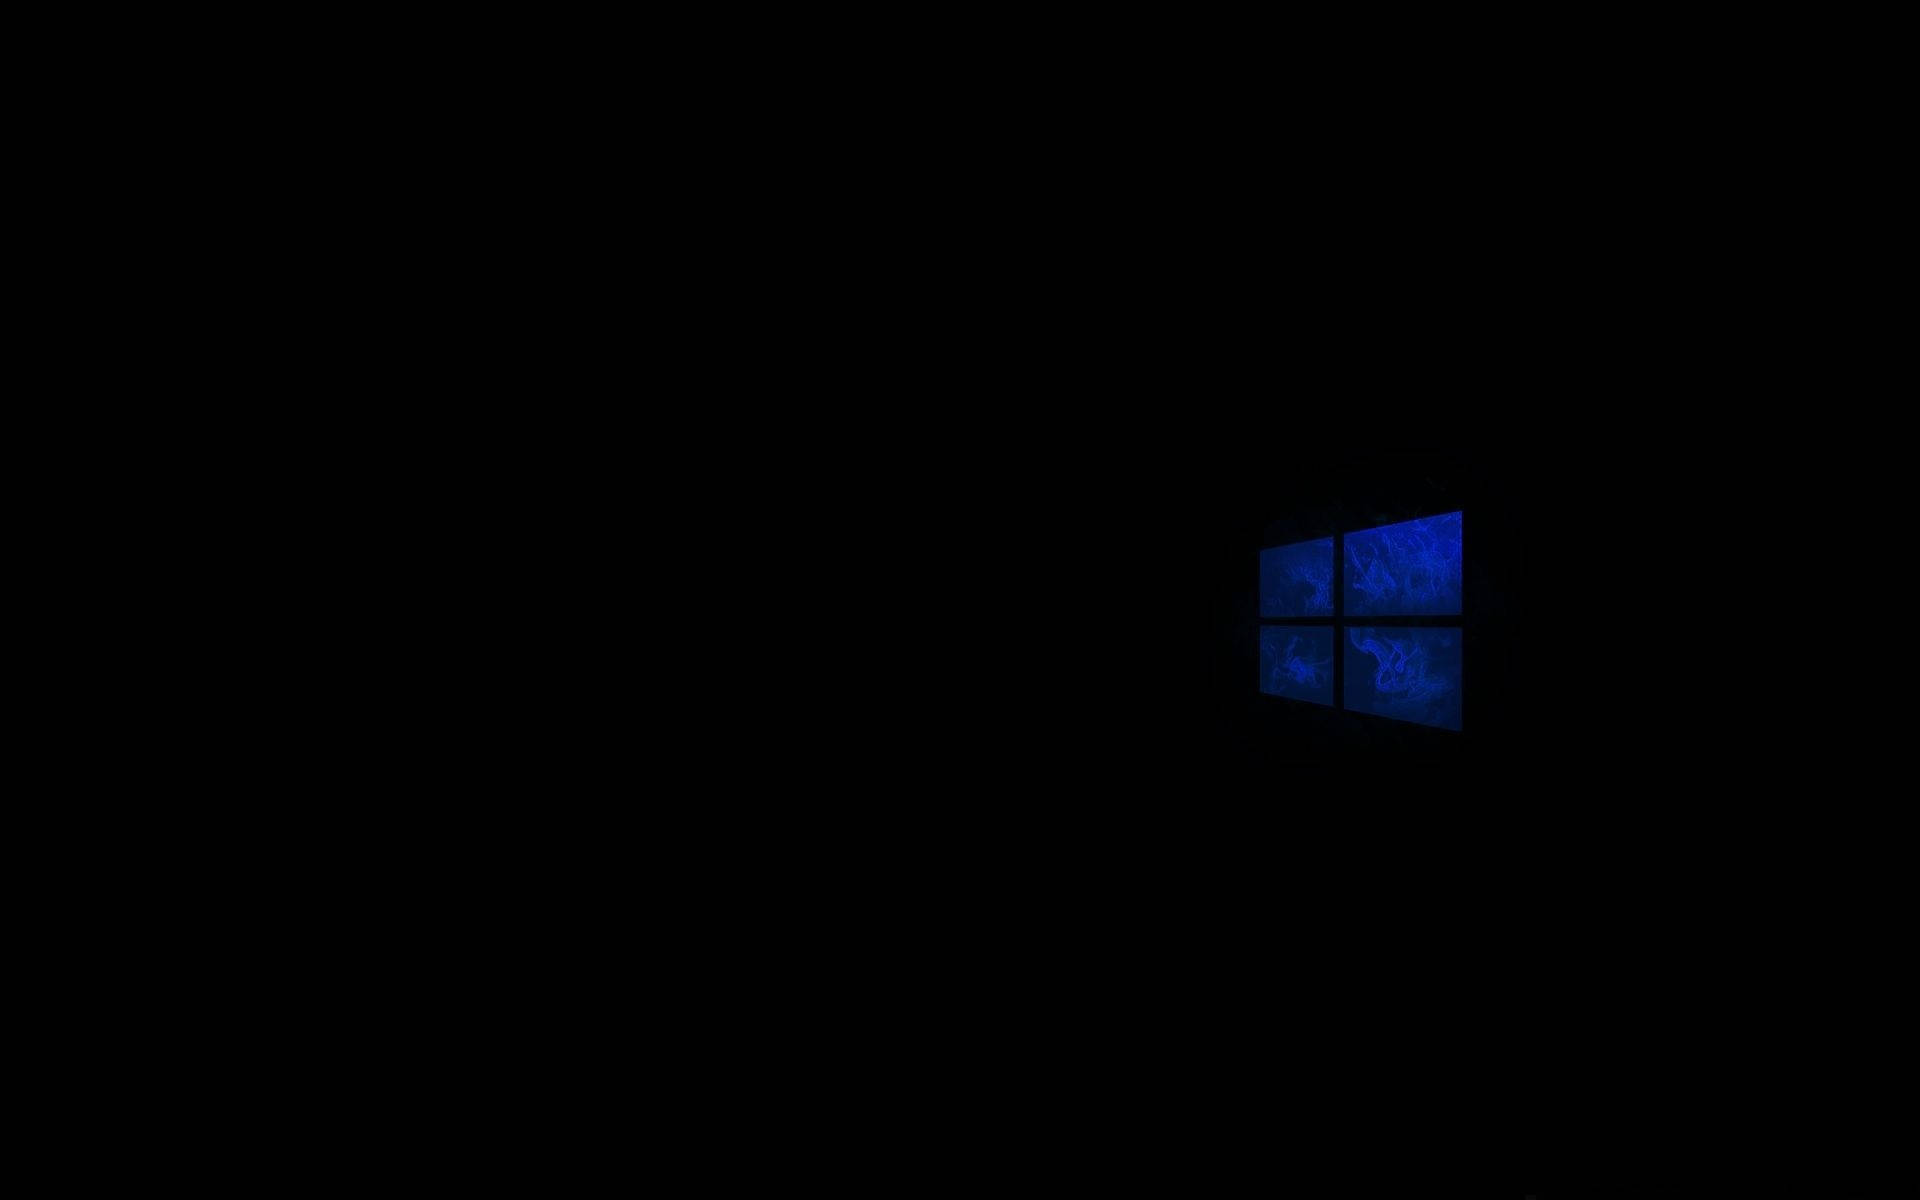 Black Windows 10 Hd Ghostly Logo Background